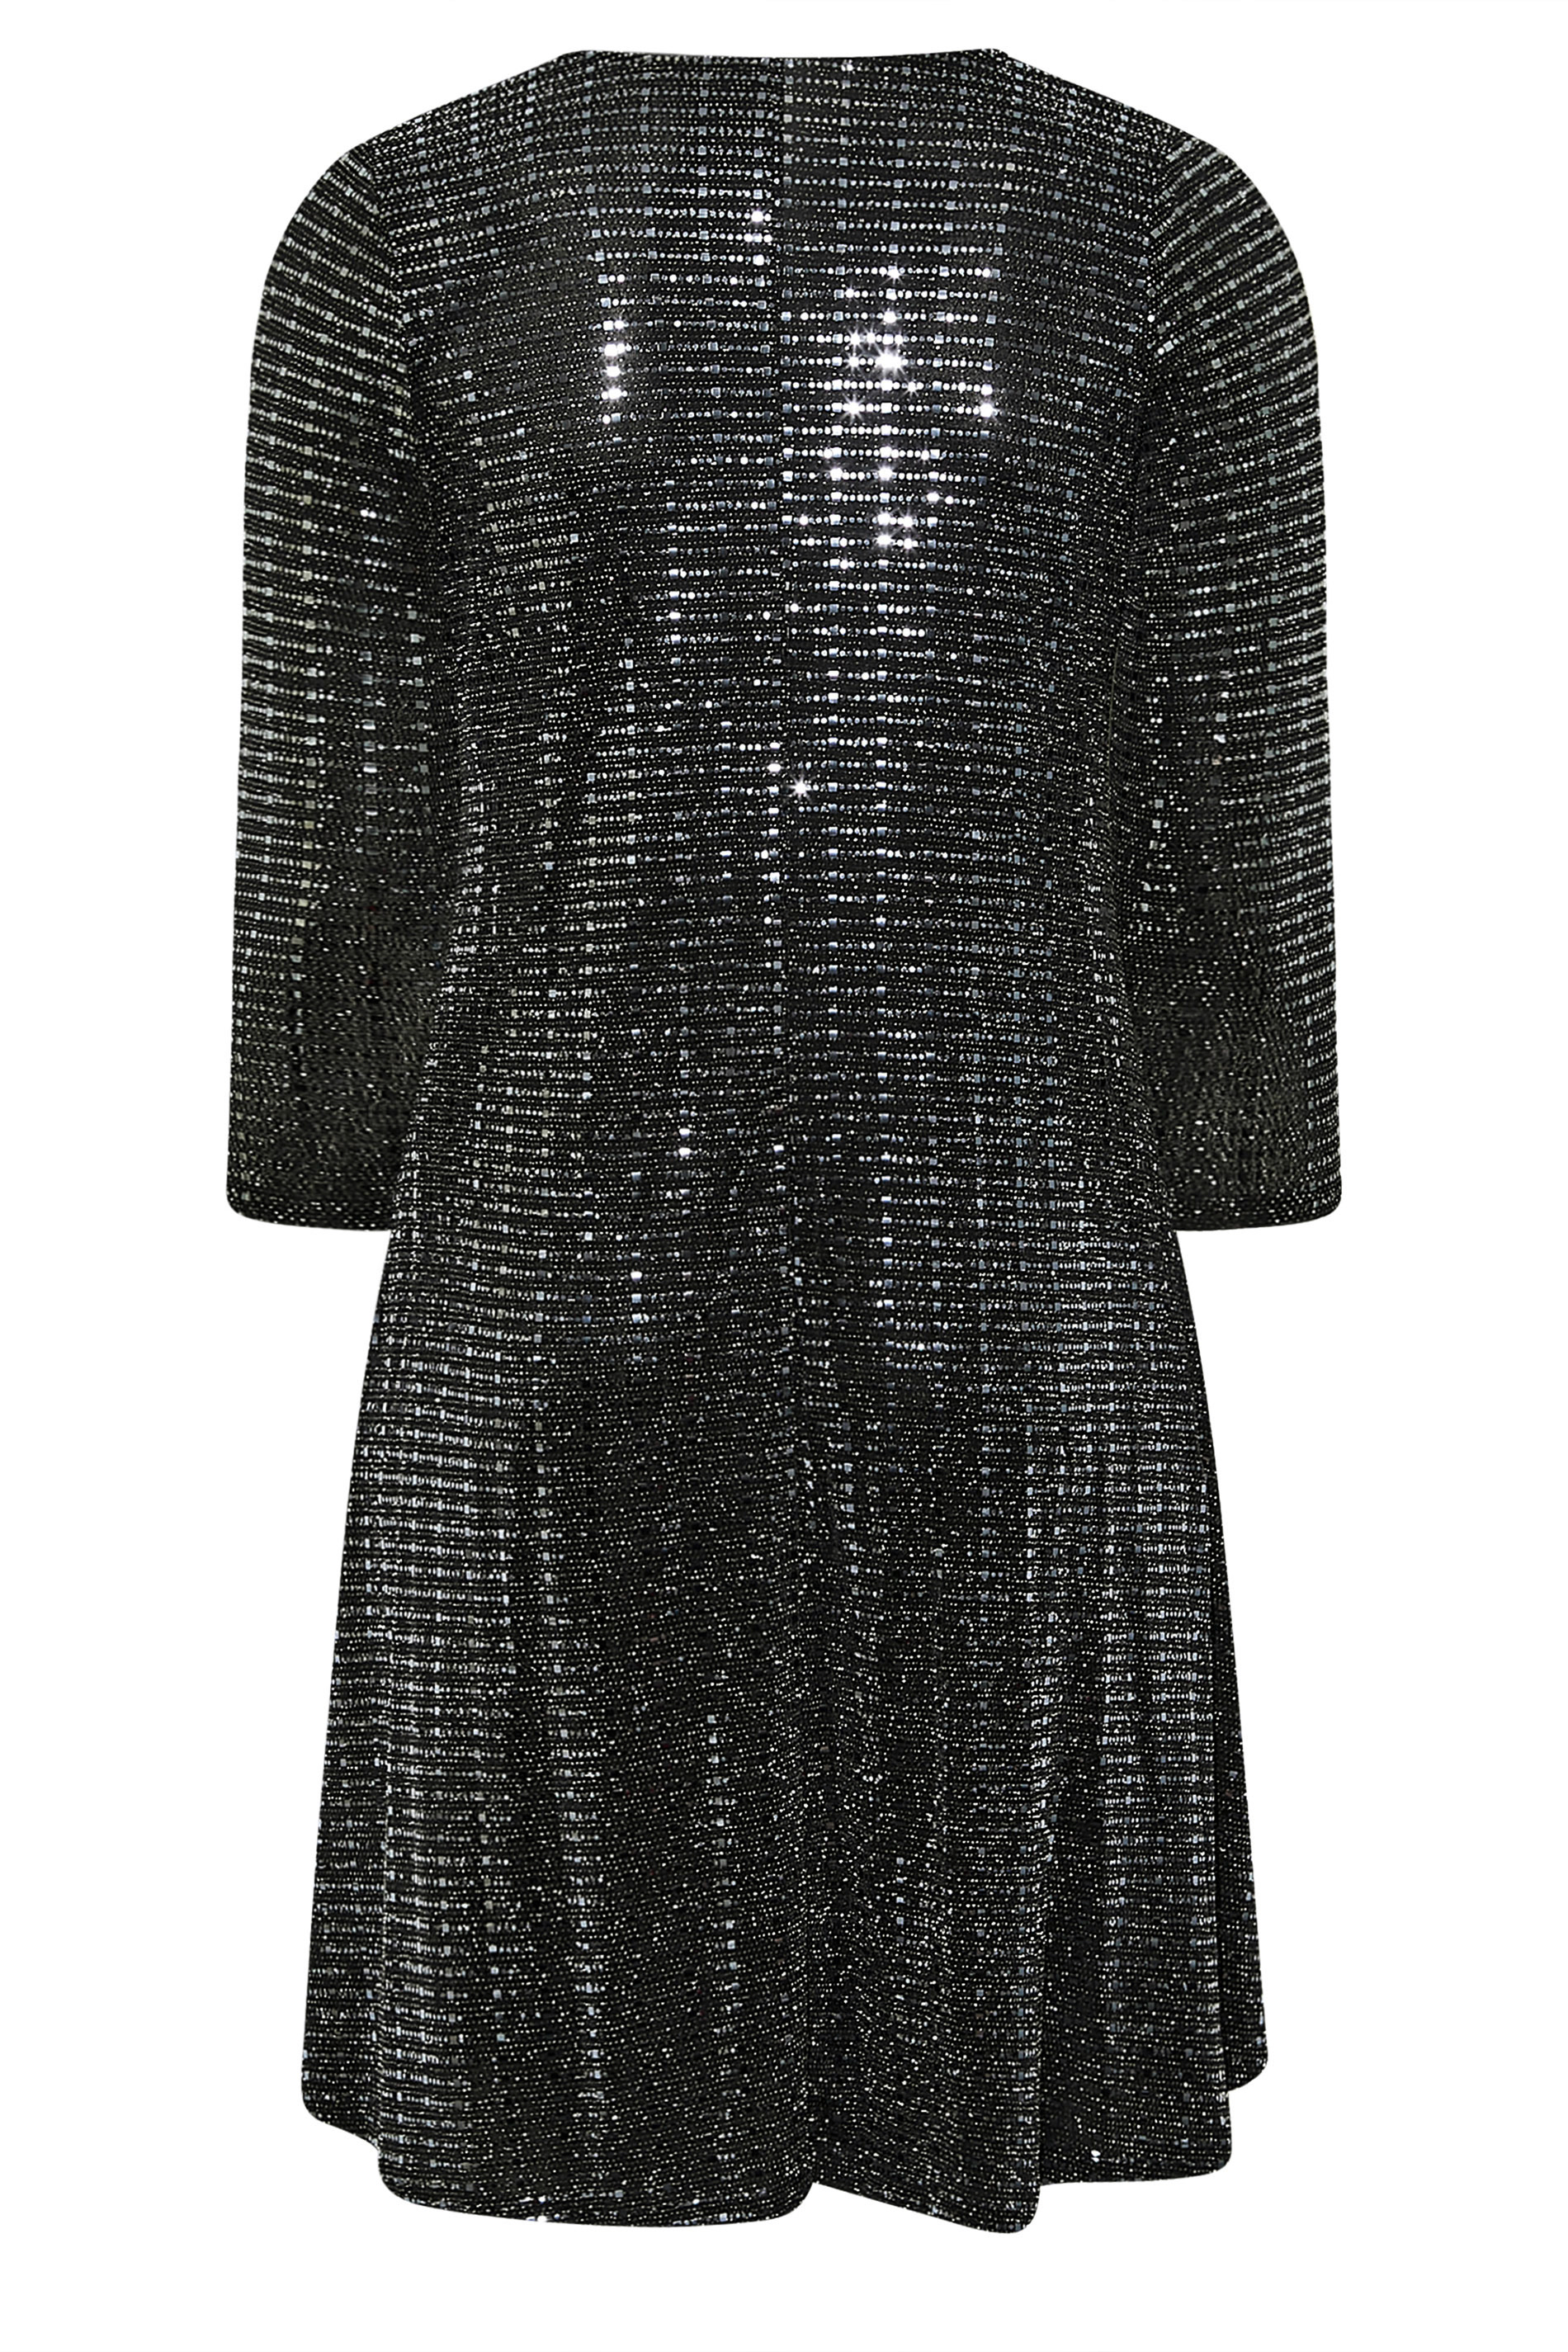 YOURS LONDON Plus Size Black Metallic Detail Wrap Dress